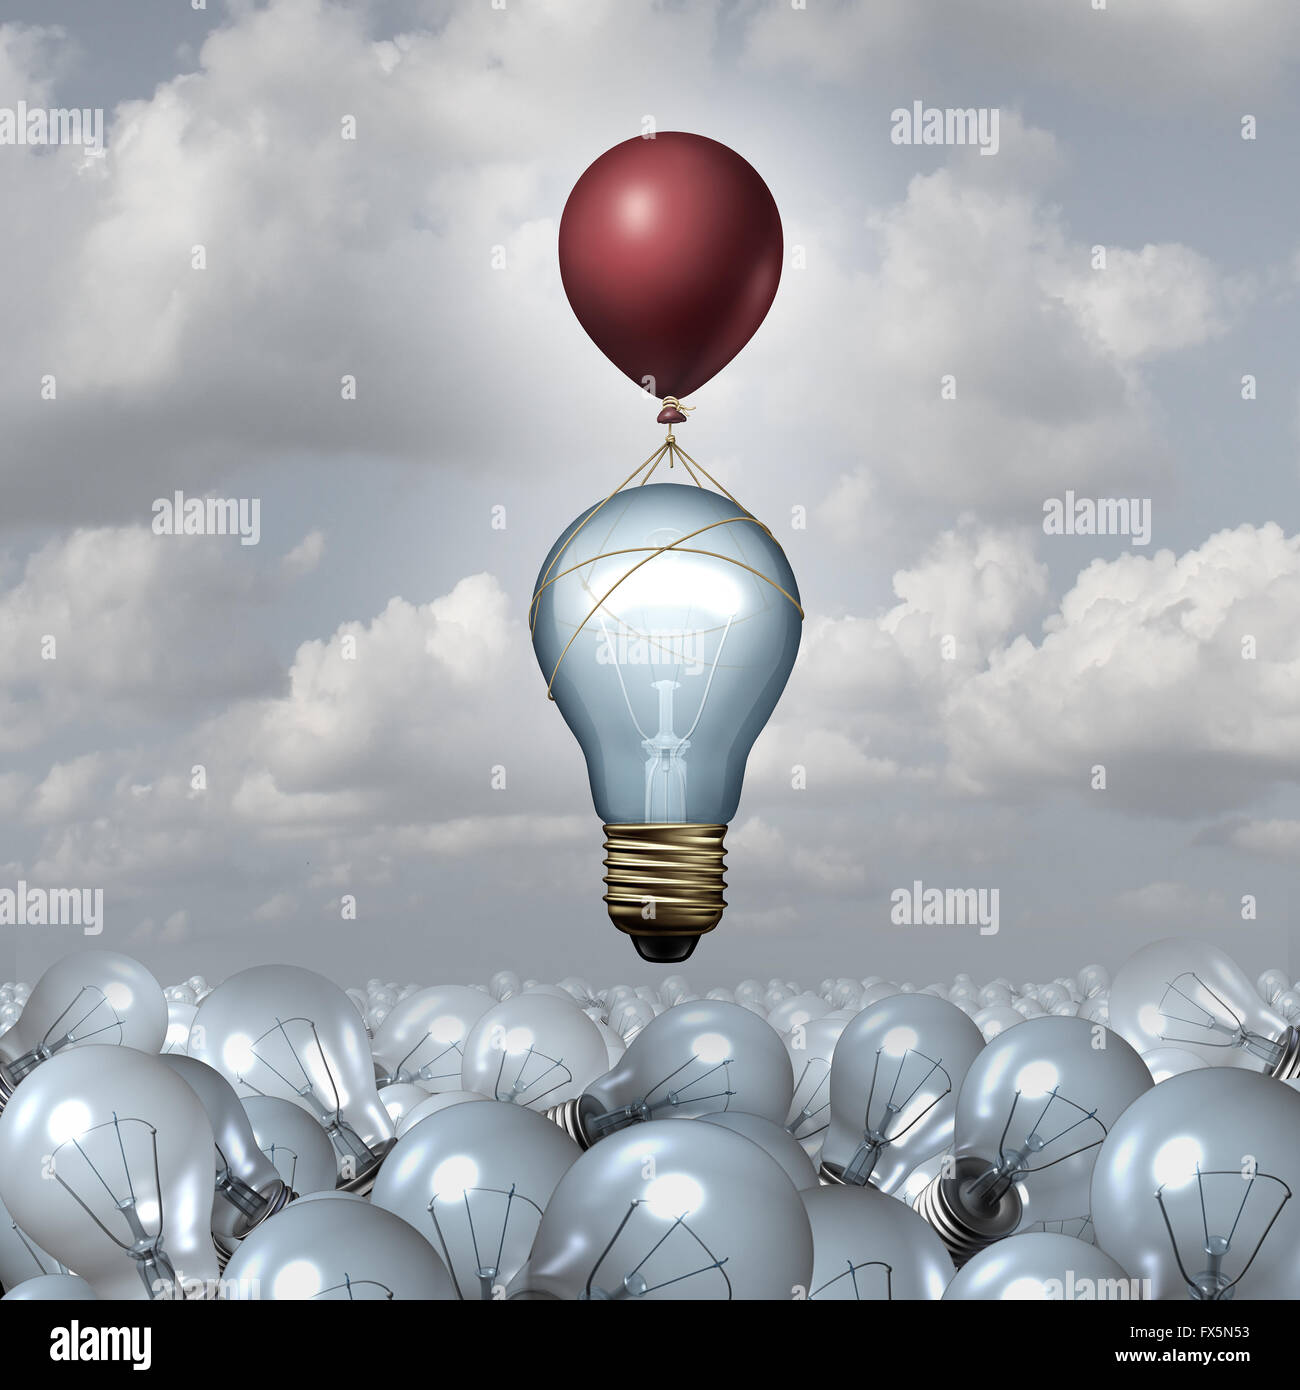 El pensamiento innovador concepto como un grupo de 3D ilustración bombillas en un vasto paisaje como una bombilla se alza con la ayuda de un globo como una metáfora de la motivación creativa innovación inspiración. Foto de stock